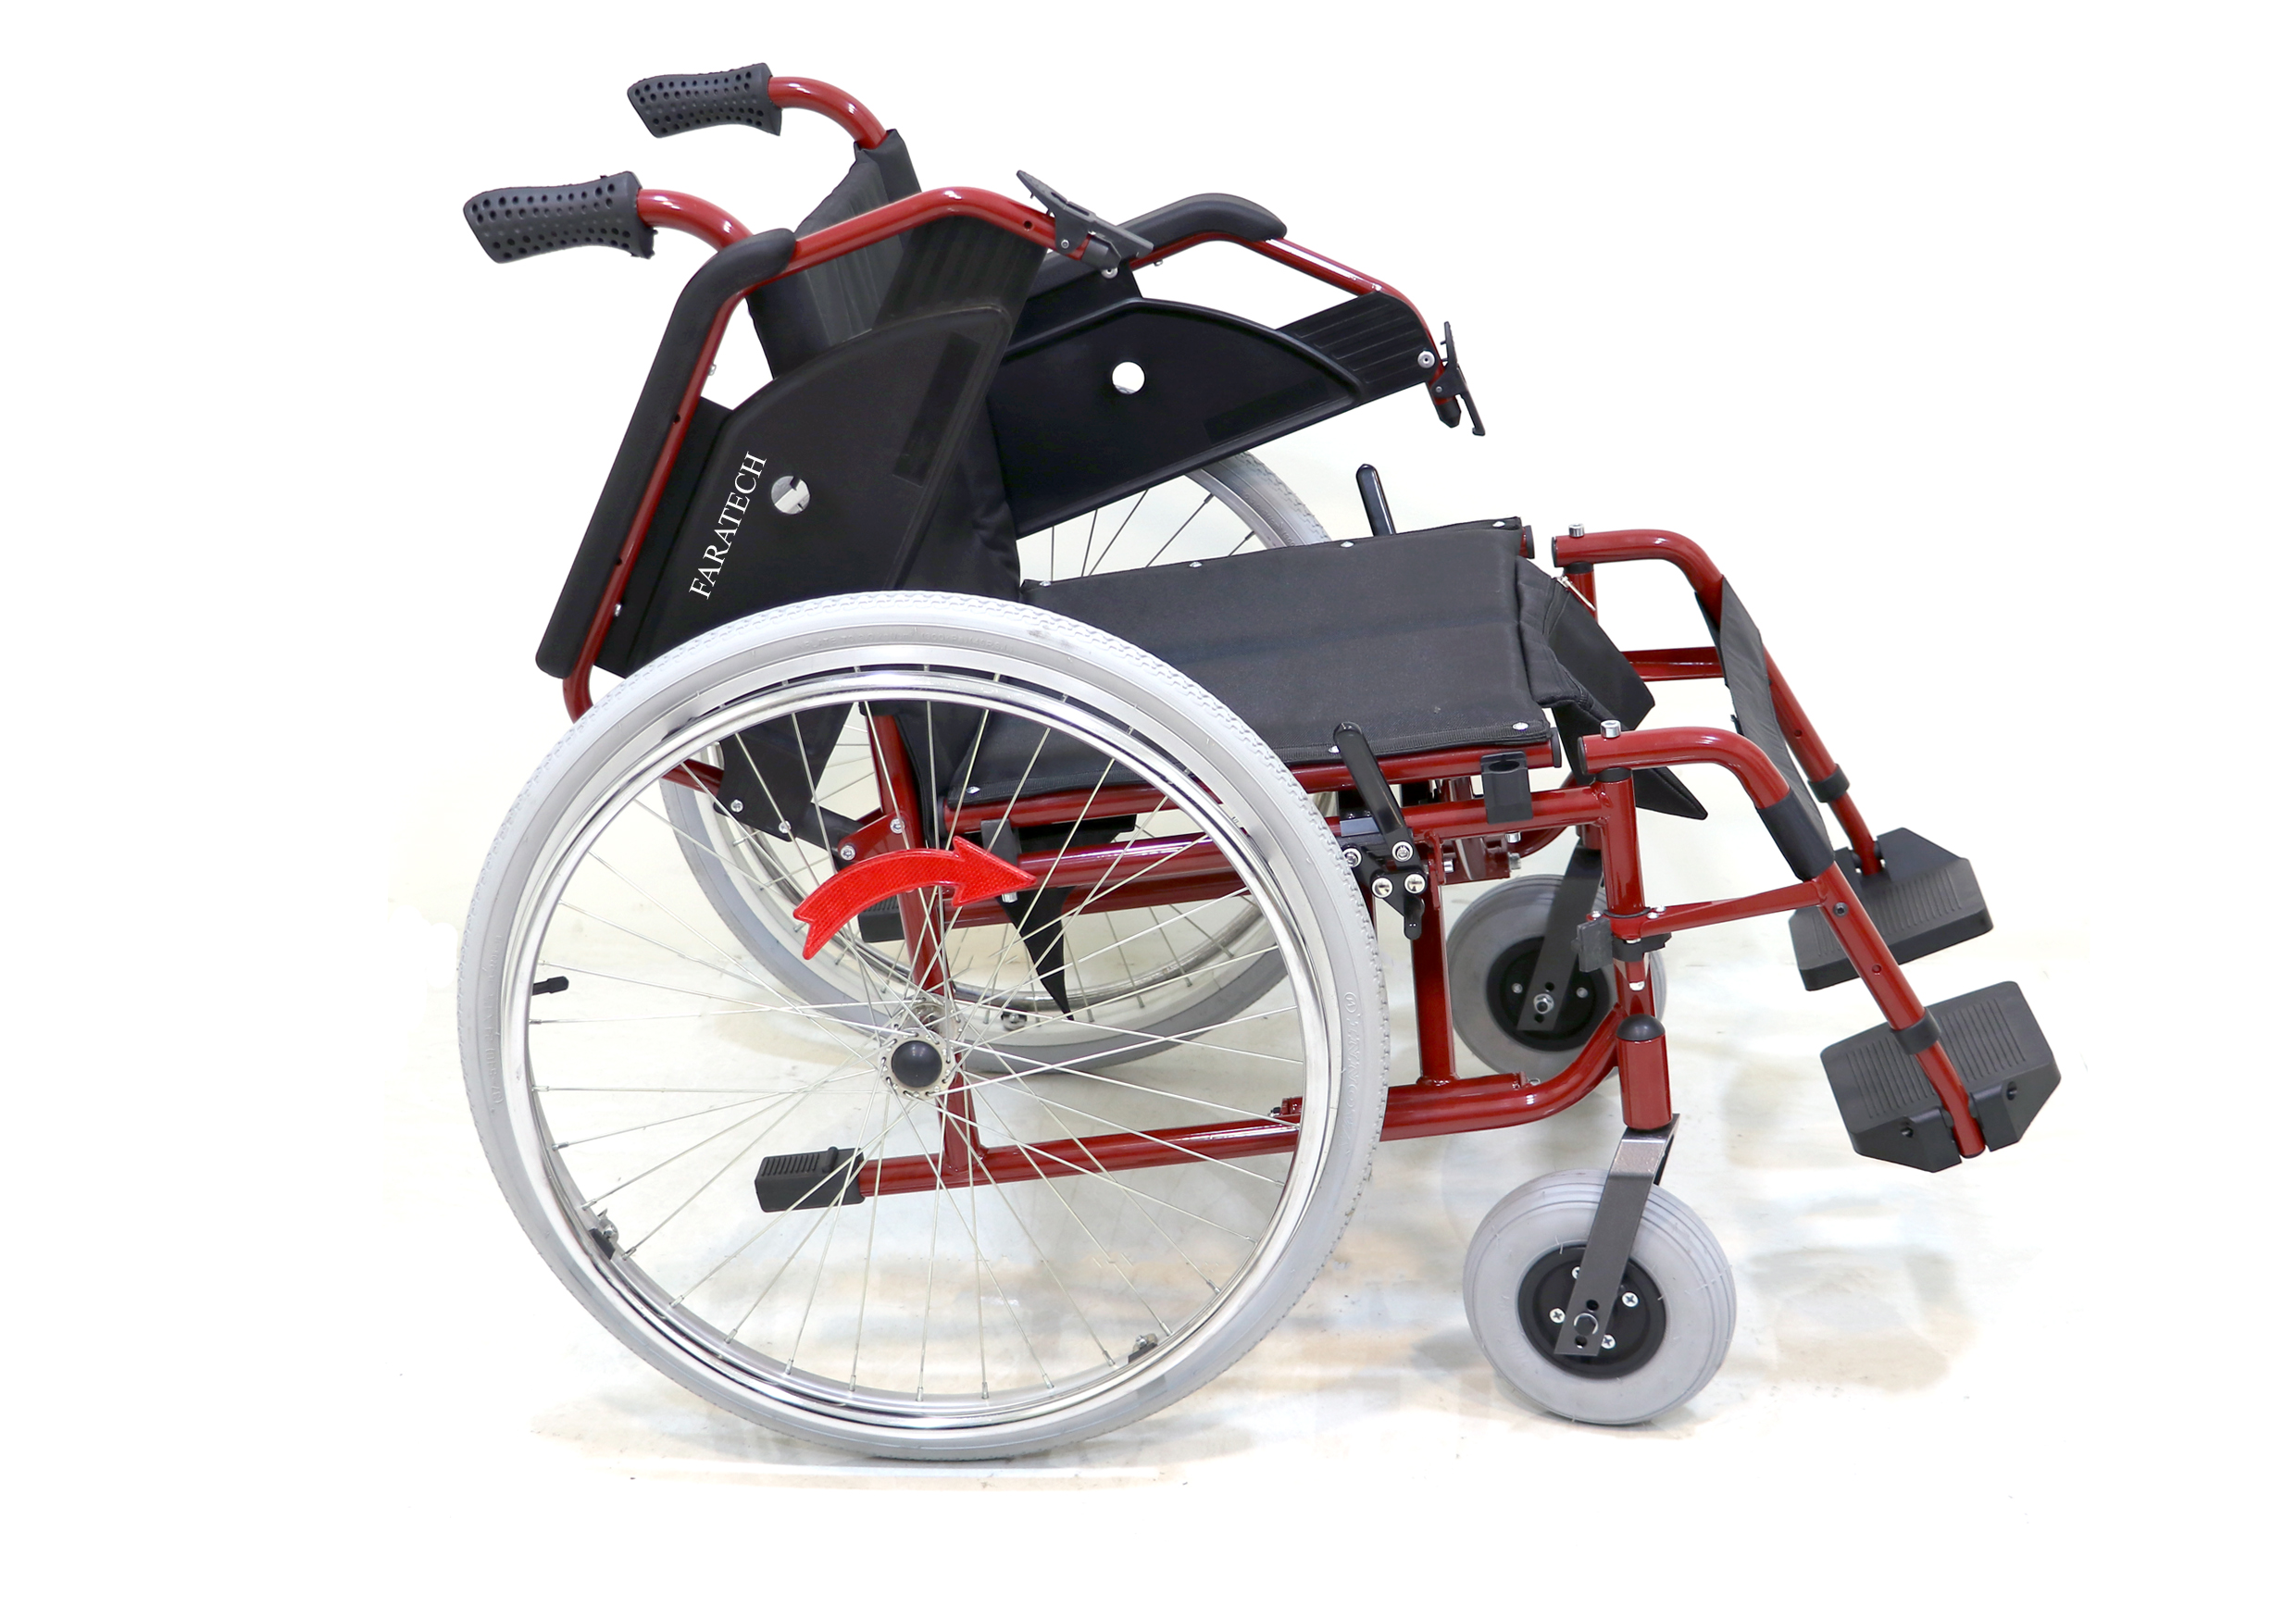  ویلچر دستی آلفا750 ویلچری سبک و مناسب جهت مسافرت و استفاده برای حمل بیمار و سالمندان و معلولین با جاگیری کم